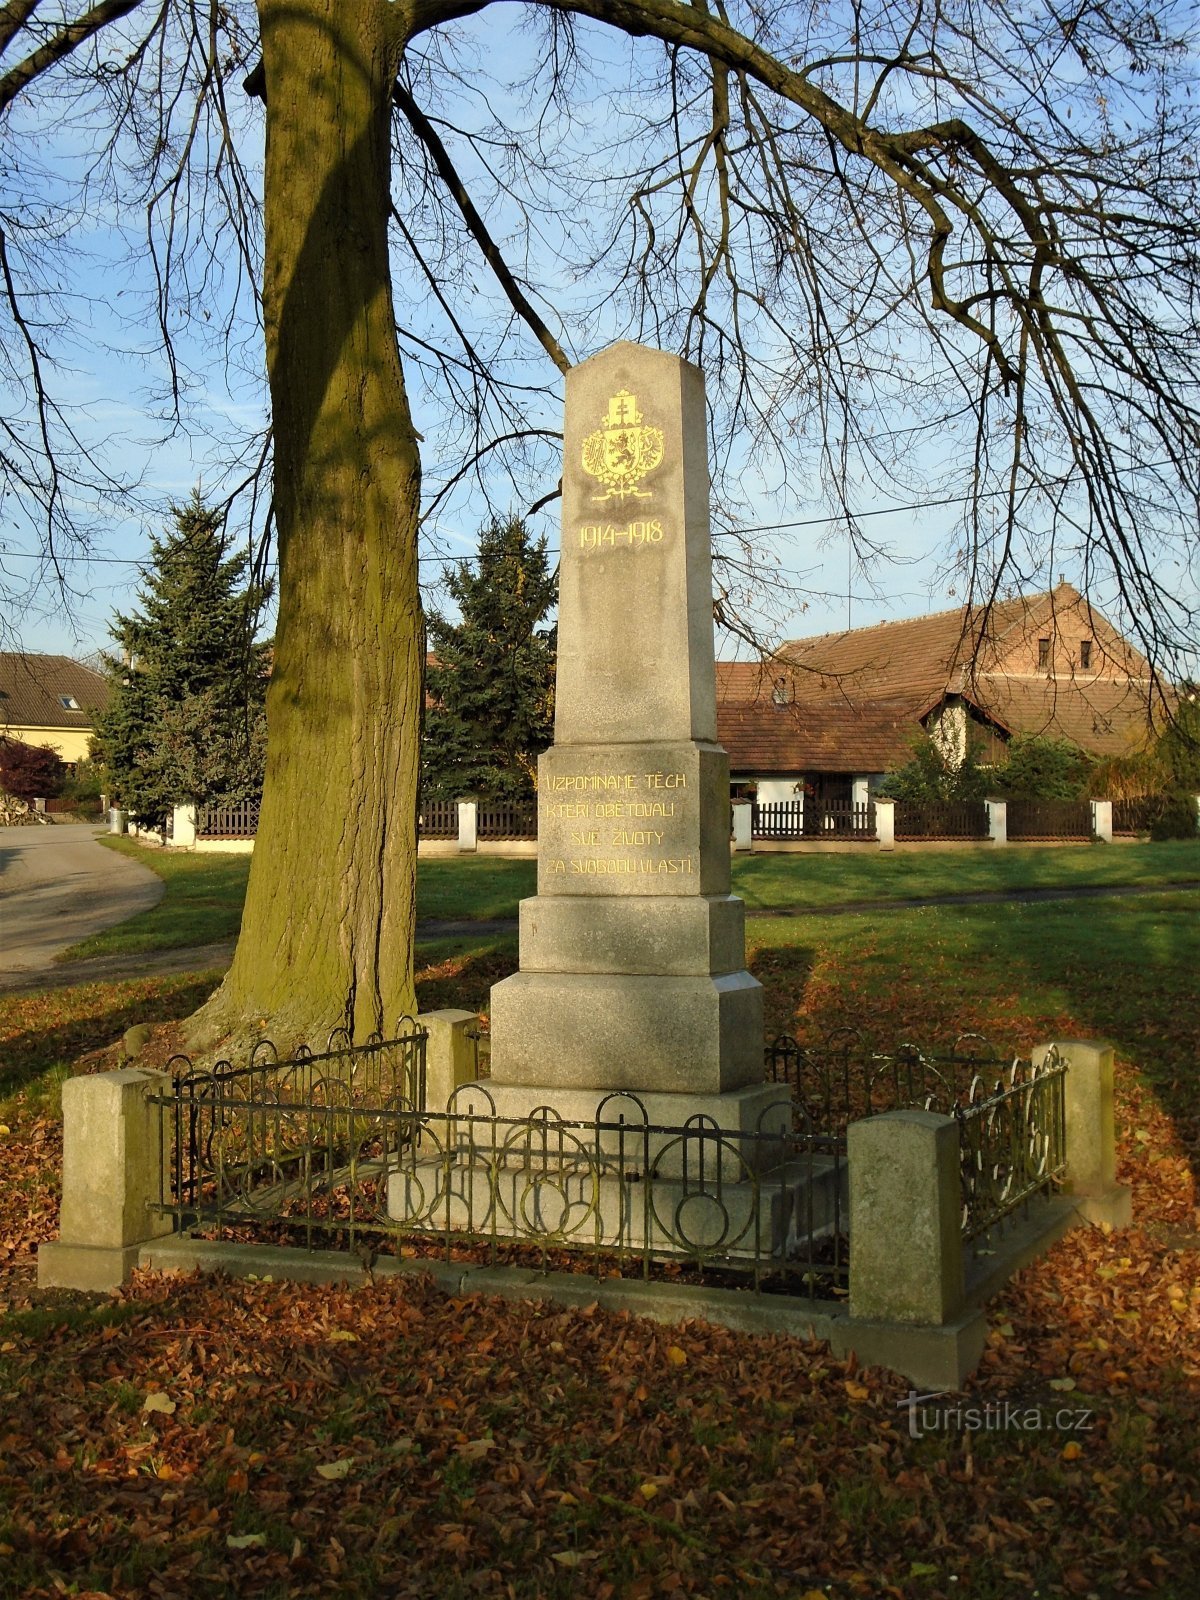 第一次世界大戦で亡くなった人々の記念碑 (Hvozdnice)